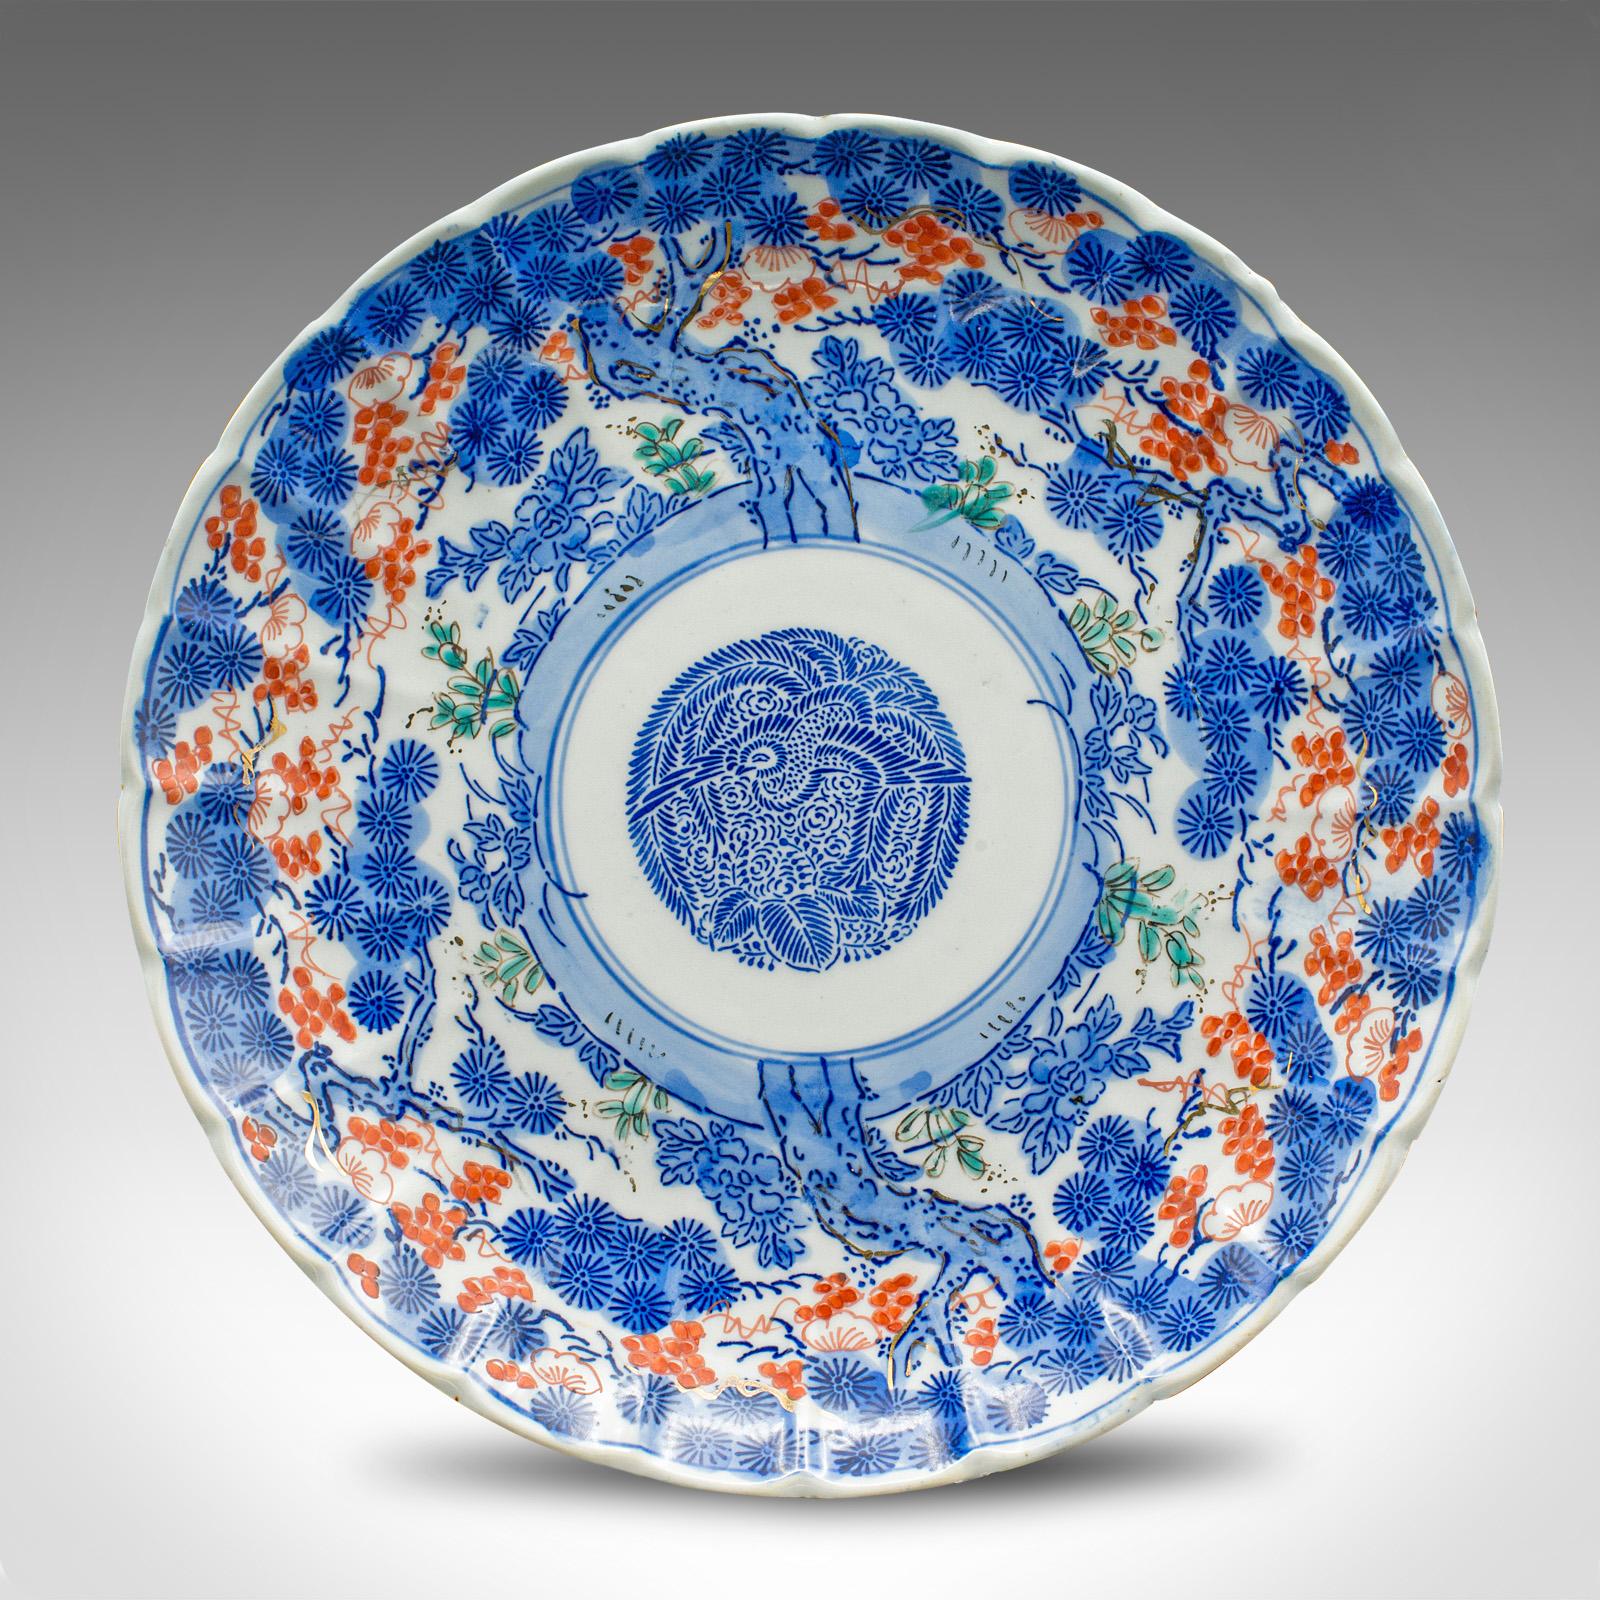 Dies ist ein antiker dekorativer Teller. Eine japanische Servierplatte aus Keramik mit blauem Imari-Geschmack aus der späten viktorianischen Periode, um 1900.

Auffallend dekorative Servierplatte mit ansprechenden Mustern
Zeigt eine wünschenswerte